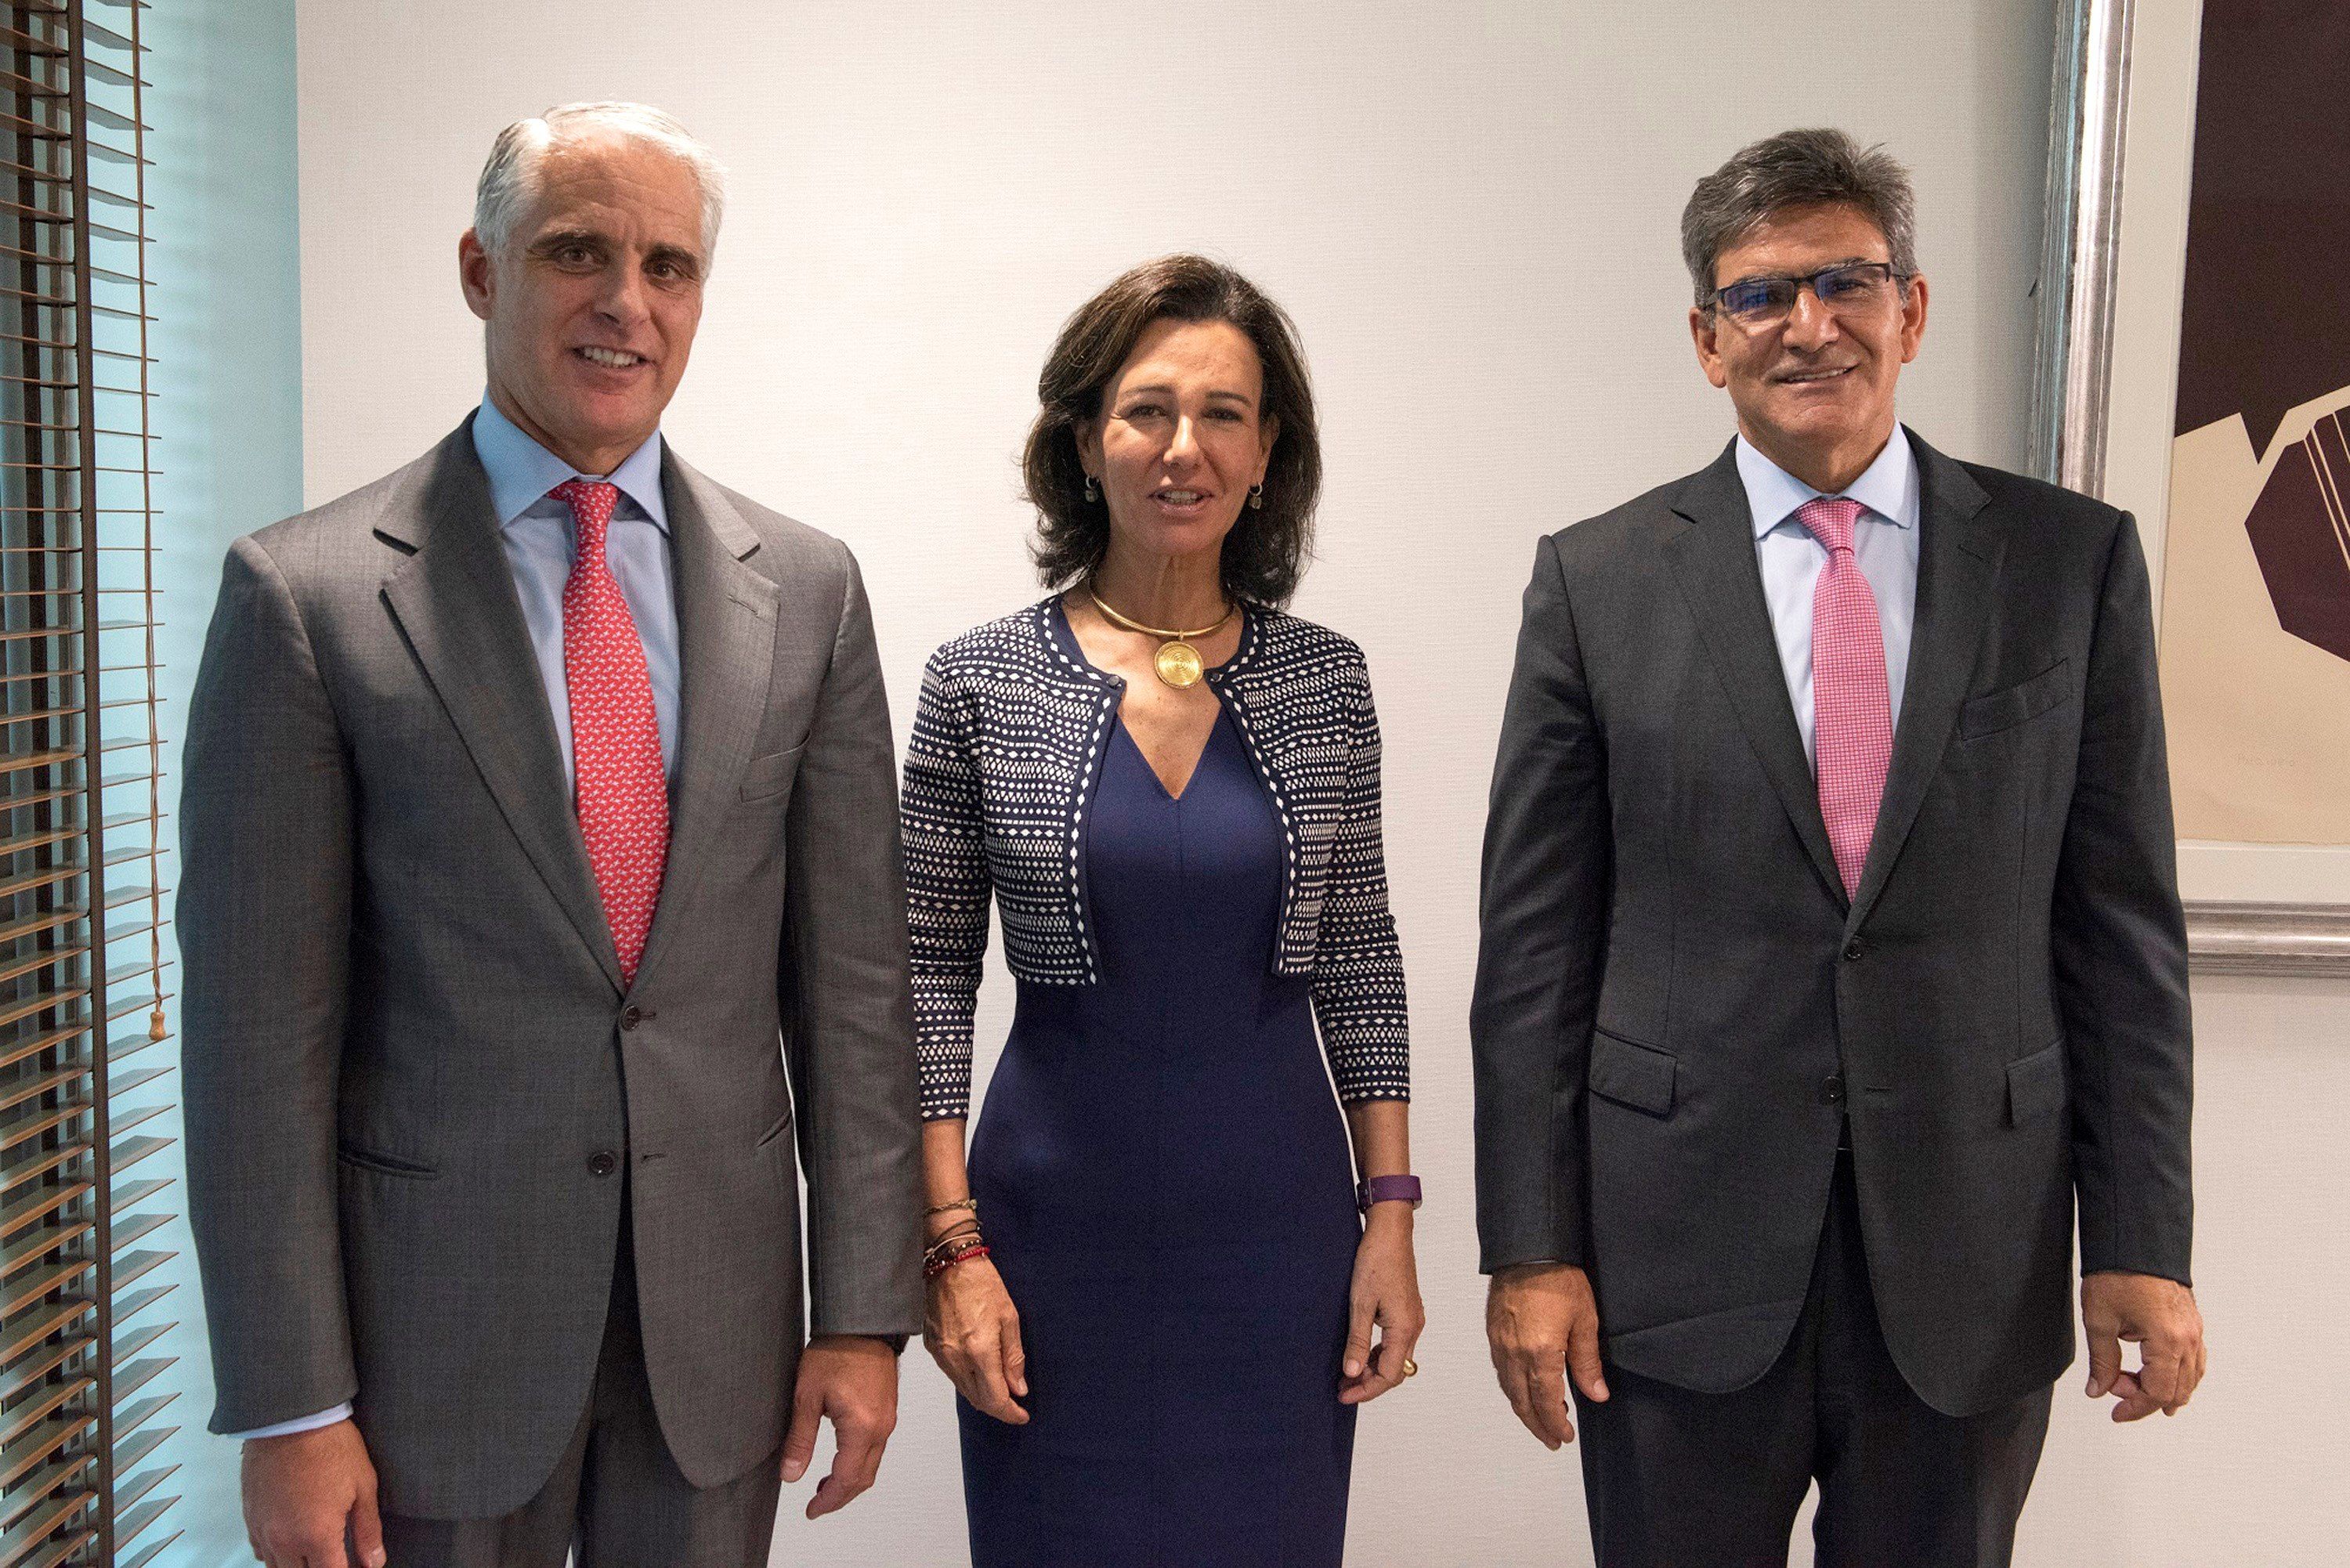  Ana Botín, junto a Andrea Orcel (i), y José Antonio Álvarez (d)  en la presentación de Orcel como consejero delegado - Santander